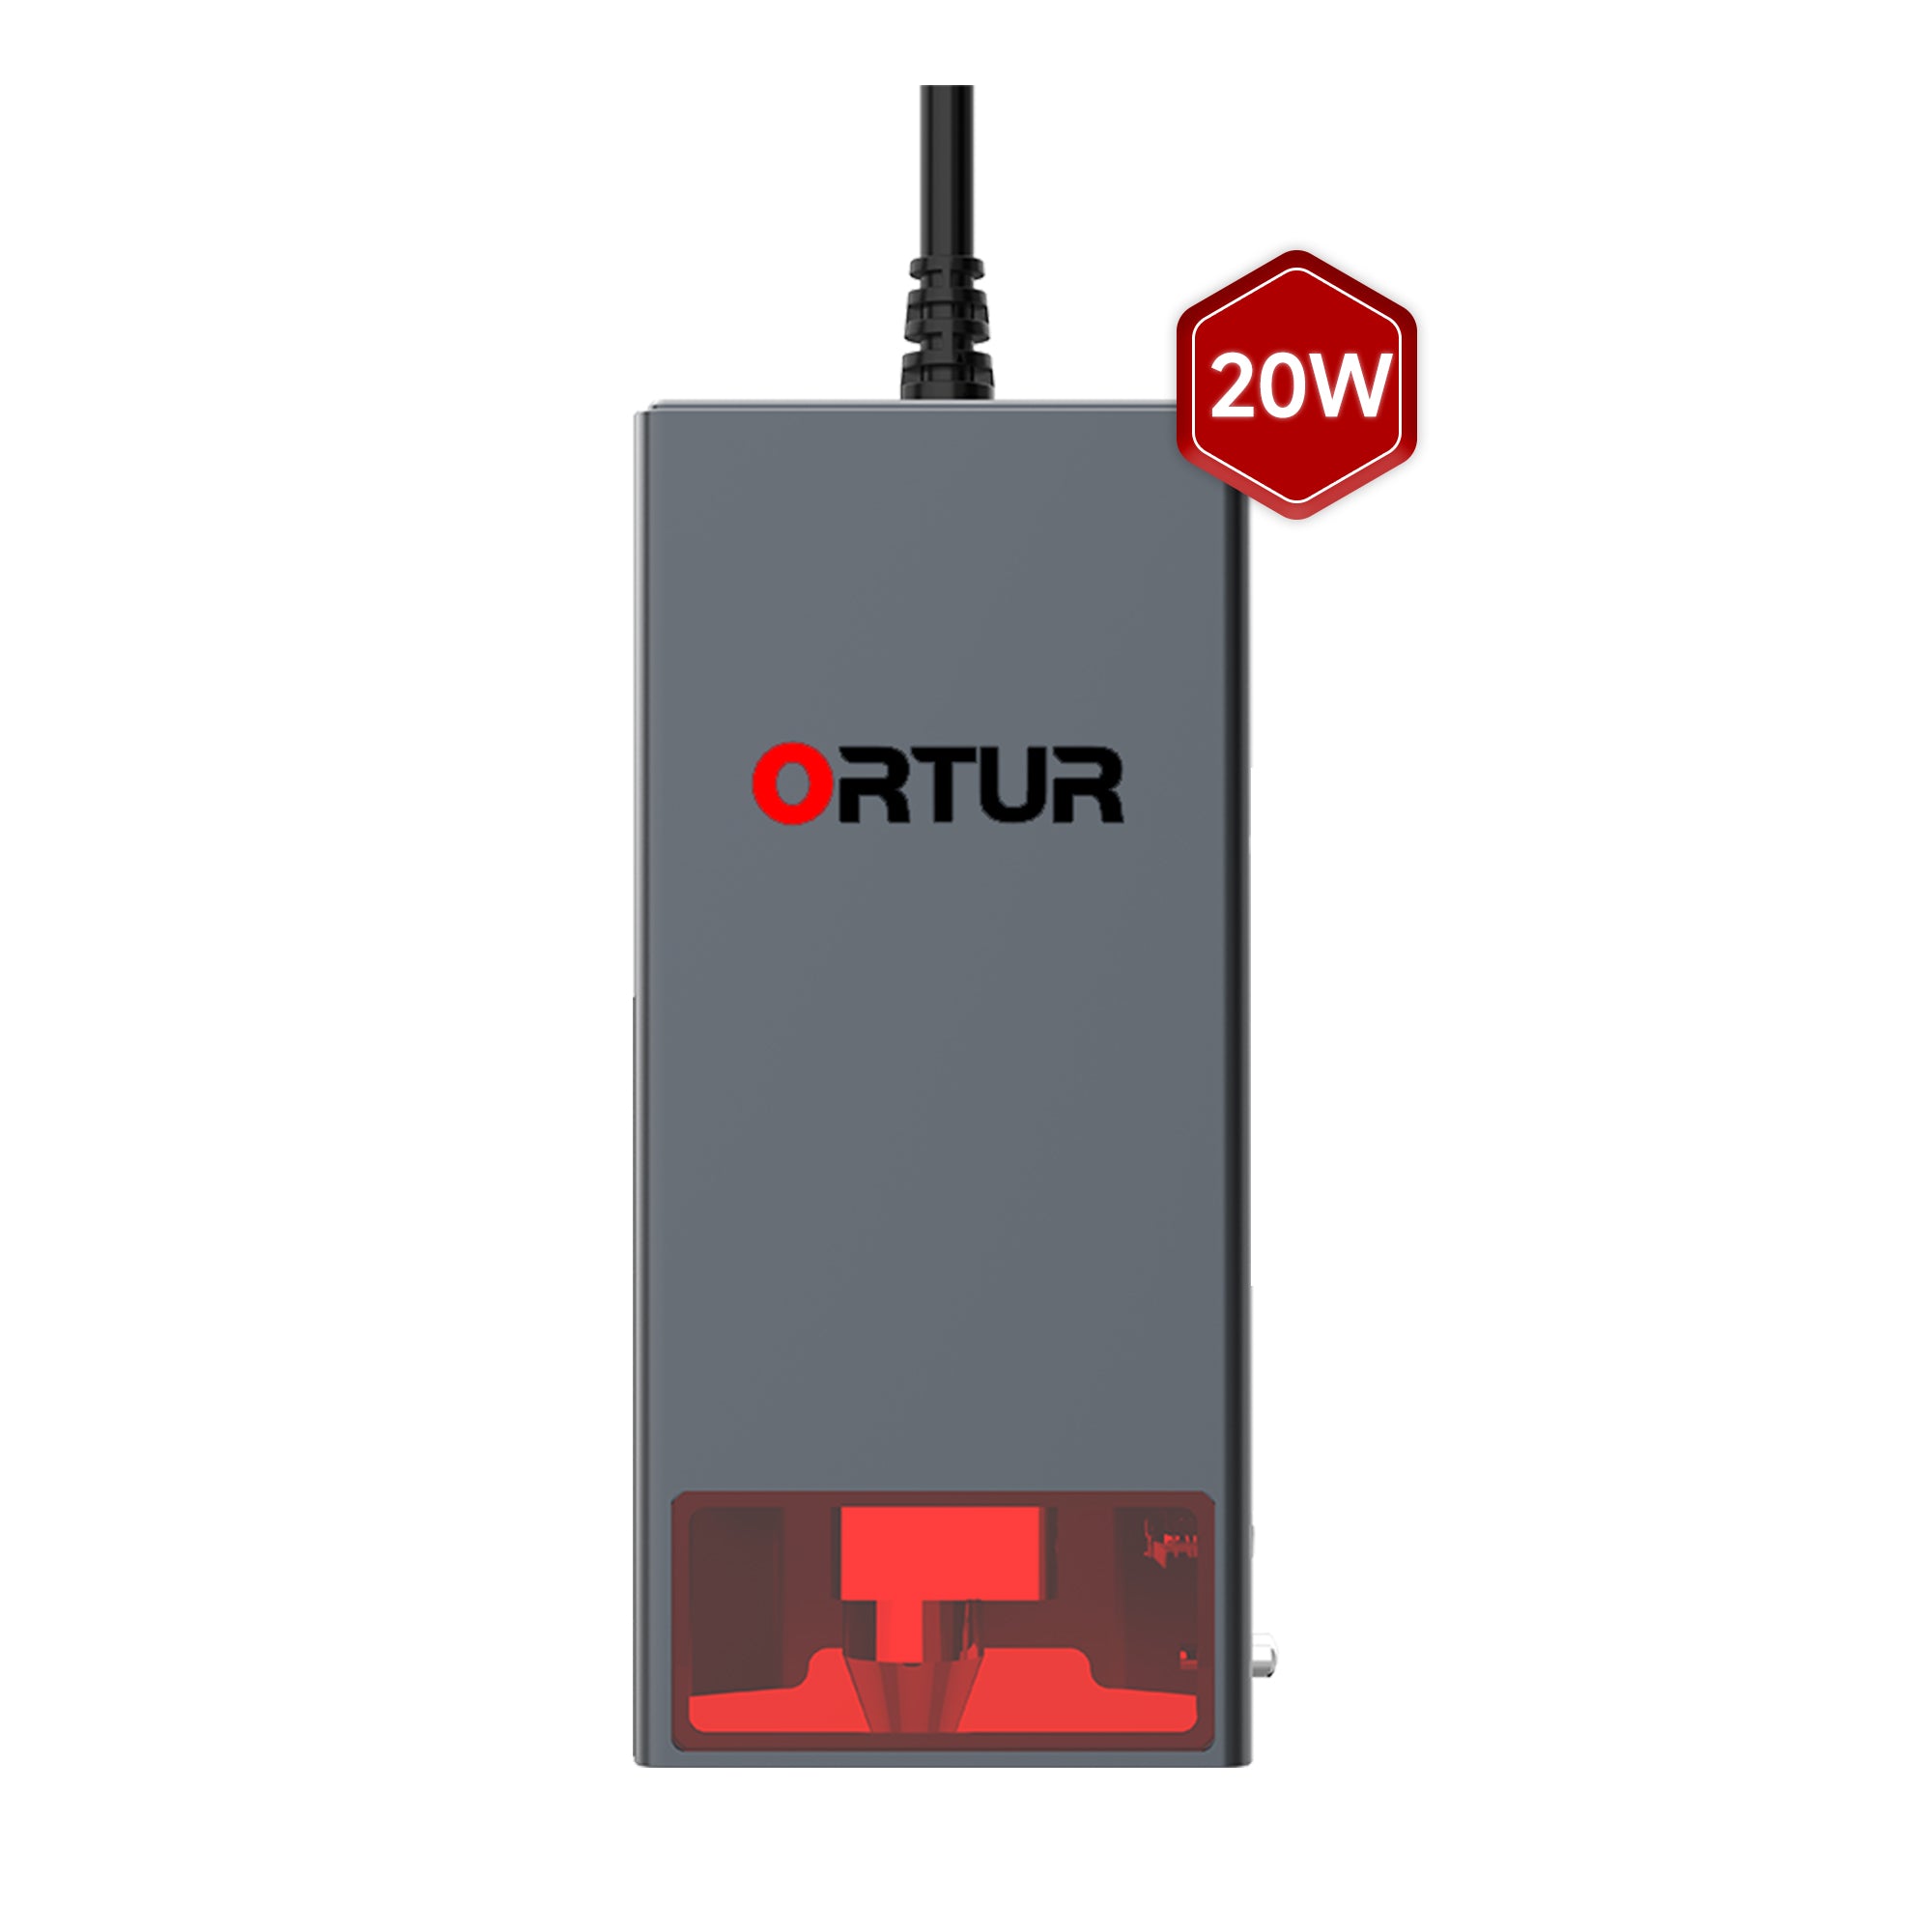 Módulo láser LU3-20A de 20W para grabador láser Ortur & Aufero